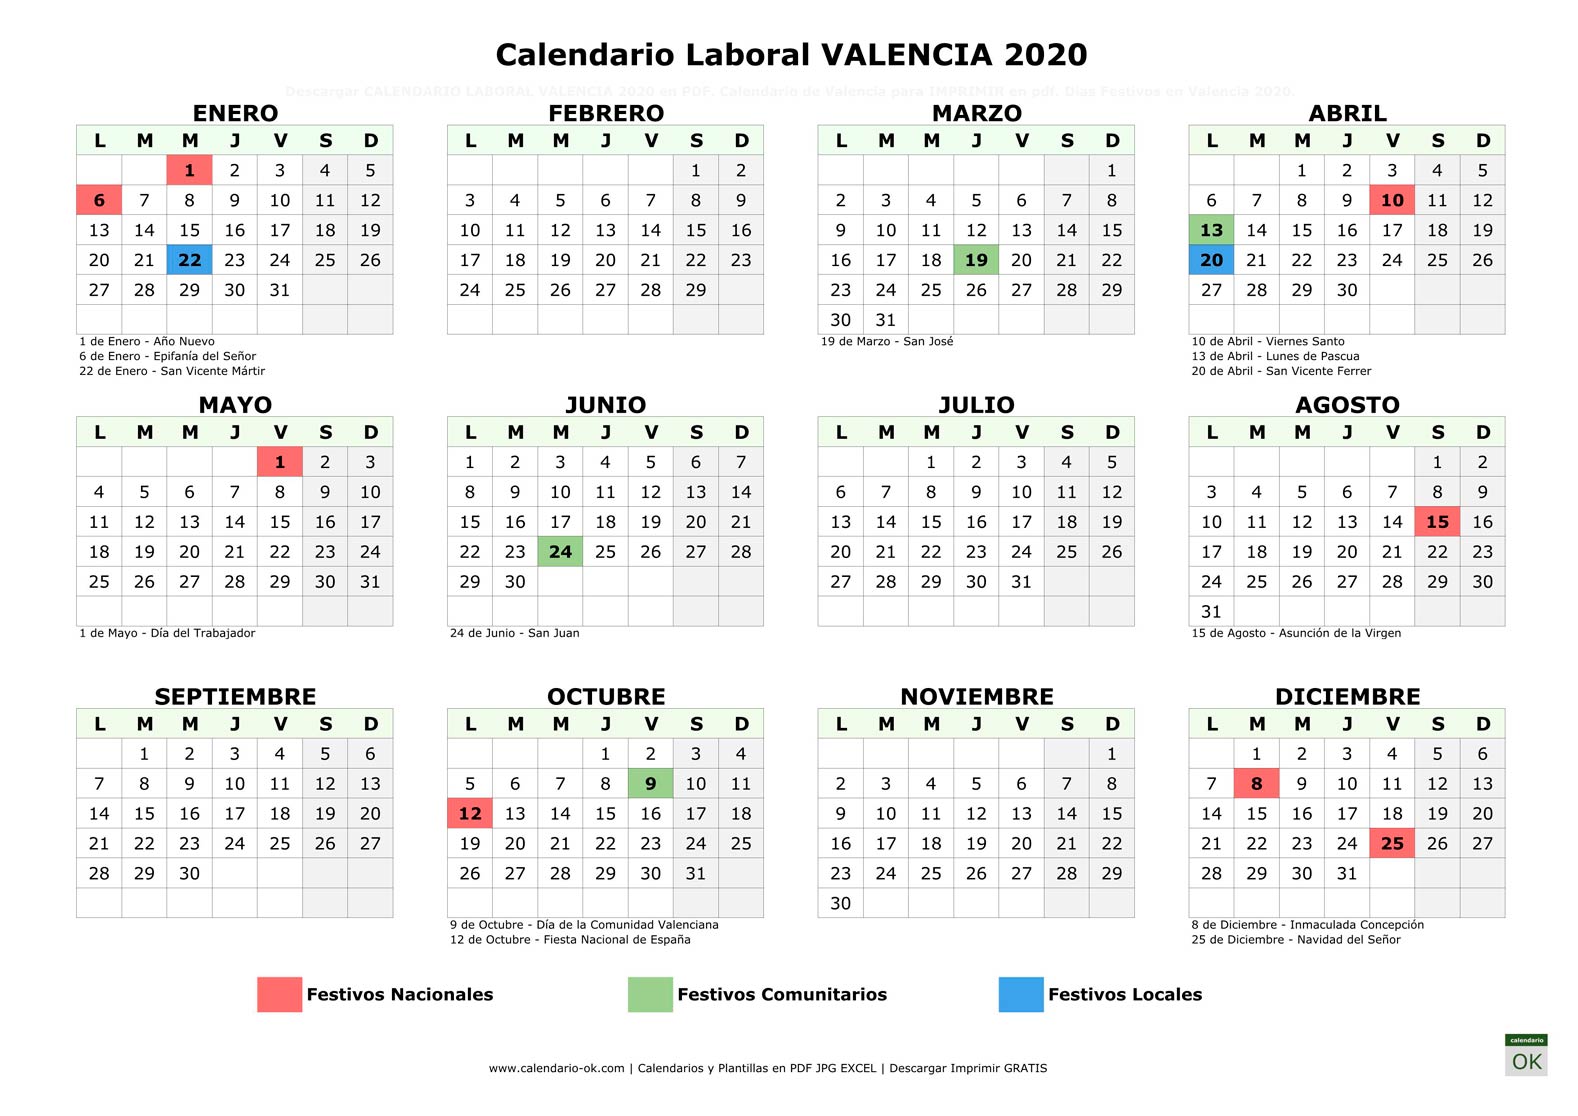 Calendario Laboral VALENCIA 2020 horizontal